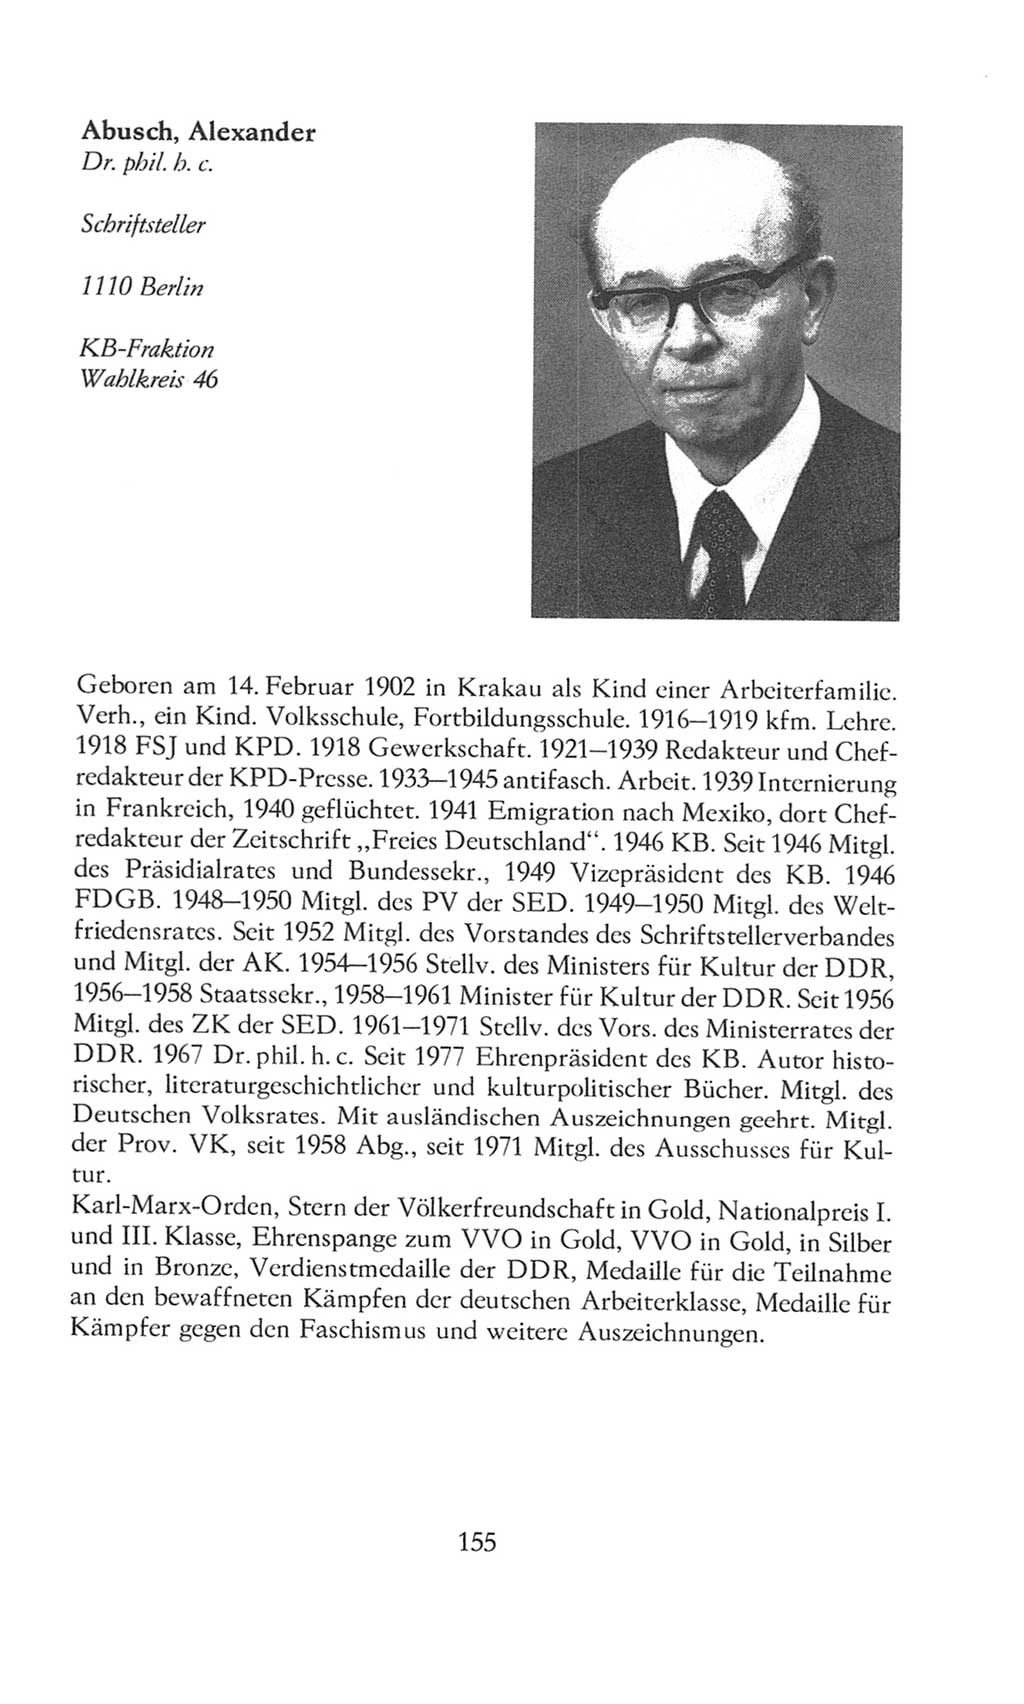 Volkskammer (VK) der Deutschen Demokratischen Republik (DDR), 8. Wahlperiode 1981-1986, Seite 155 (VK. DDR 8. WP. 1981-1986, S. 155)